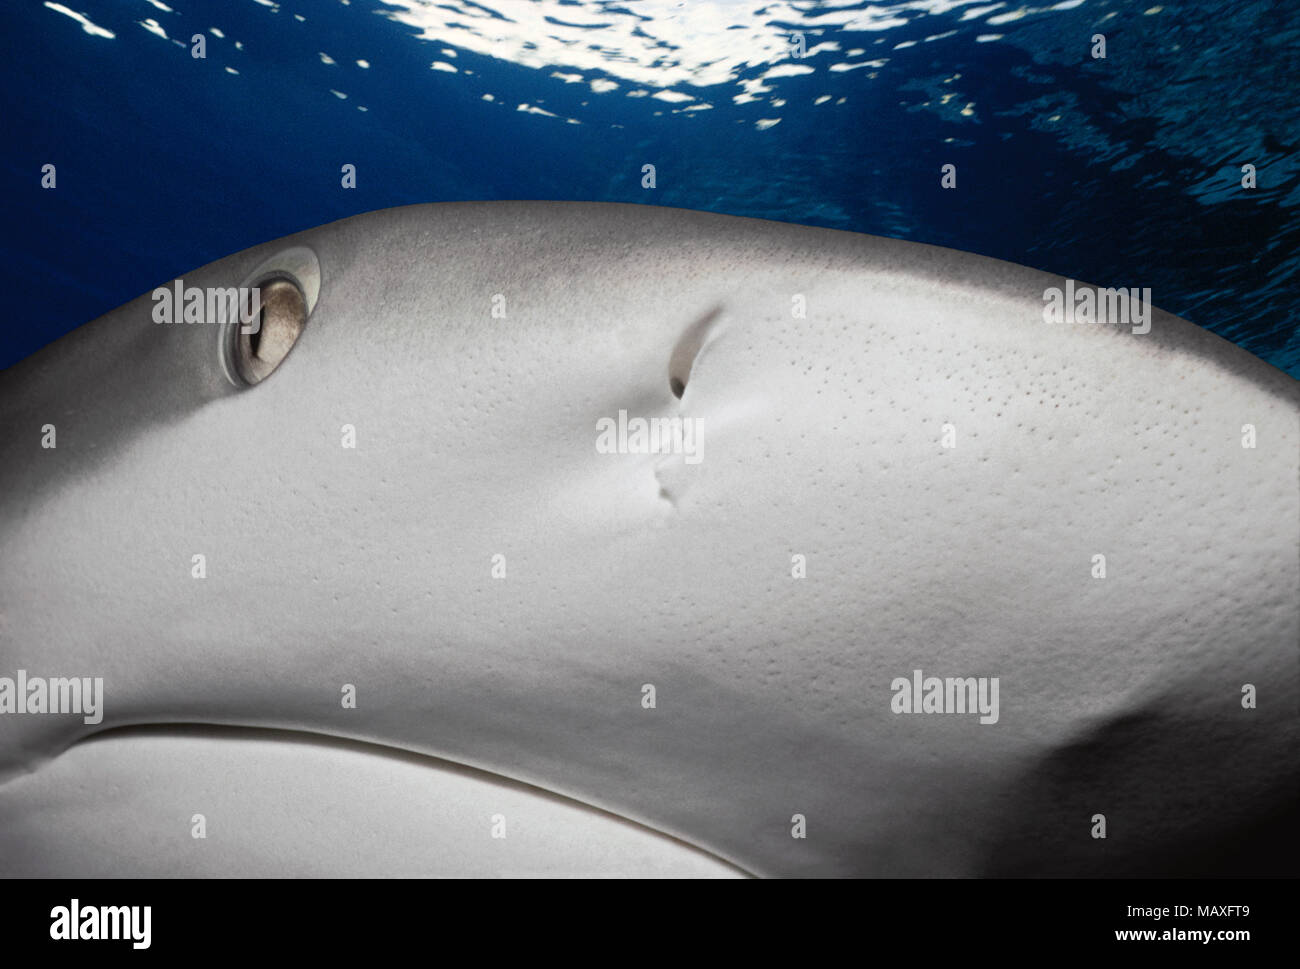 Karibische Riffhai (Carcharhinus perezi), Bahamas - Karibik. Dieses Bild wurde digital nachbearbeitet, abgelenkt oder zu mehr inte hinzufügen zu entfernen. Stockfoto